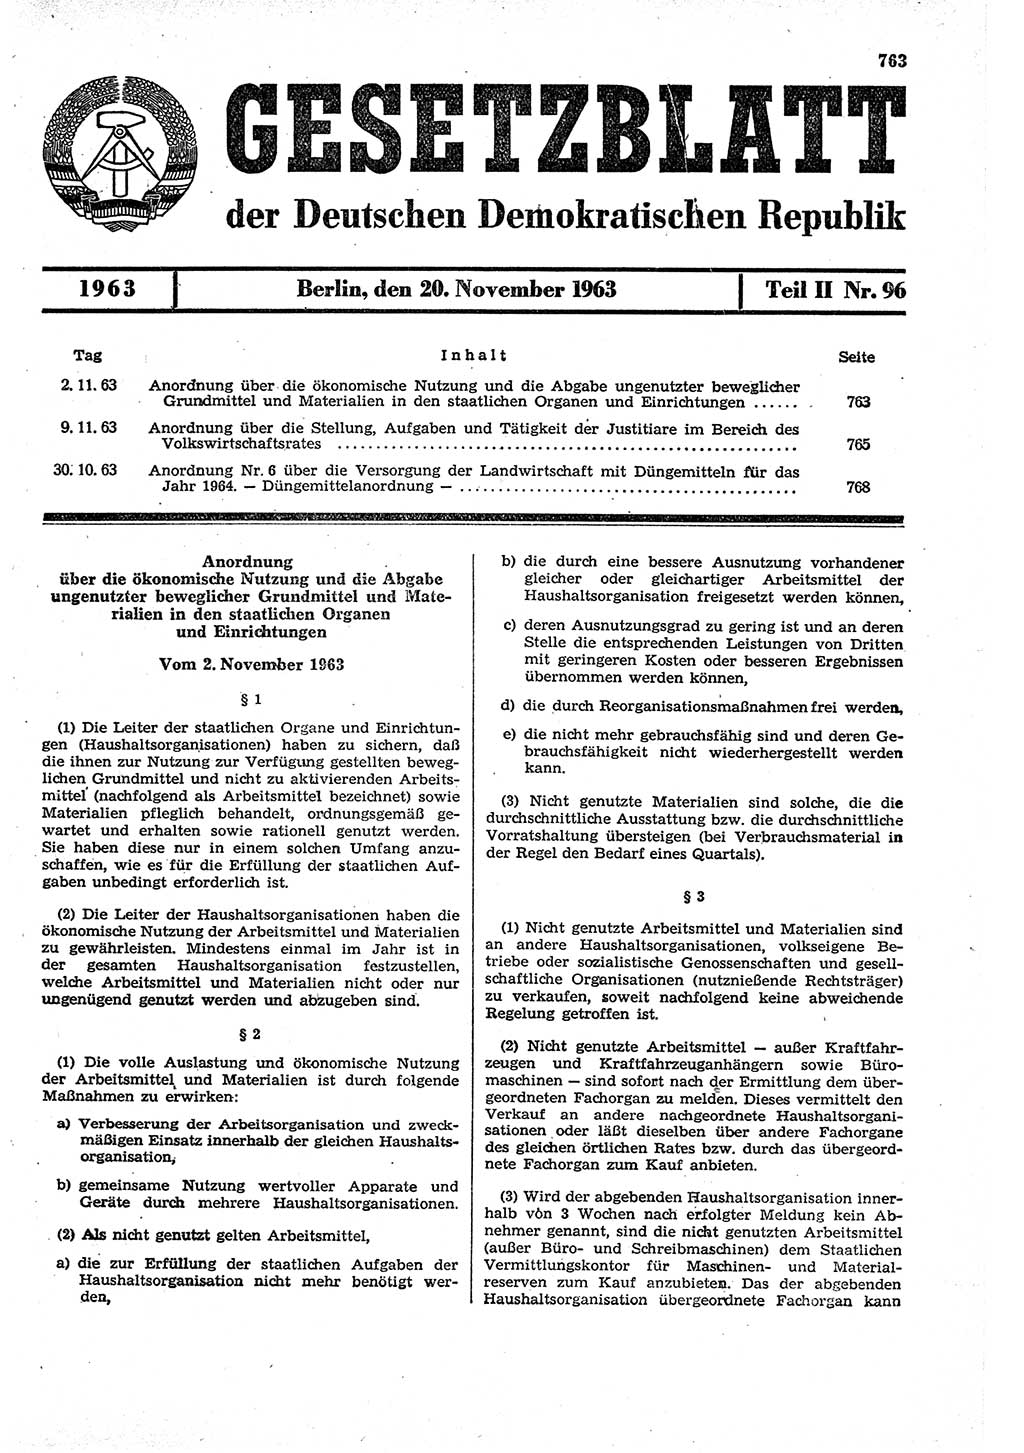 Gesetzblatt (GBl.) der Deutschen Demokratischen Republik (DDR) Teil ⅠⅠ 1963, Seite 763 (GBl. DDR ⅠⅠ 1963, S. 763)